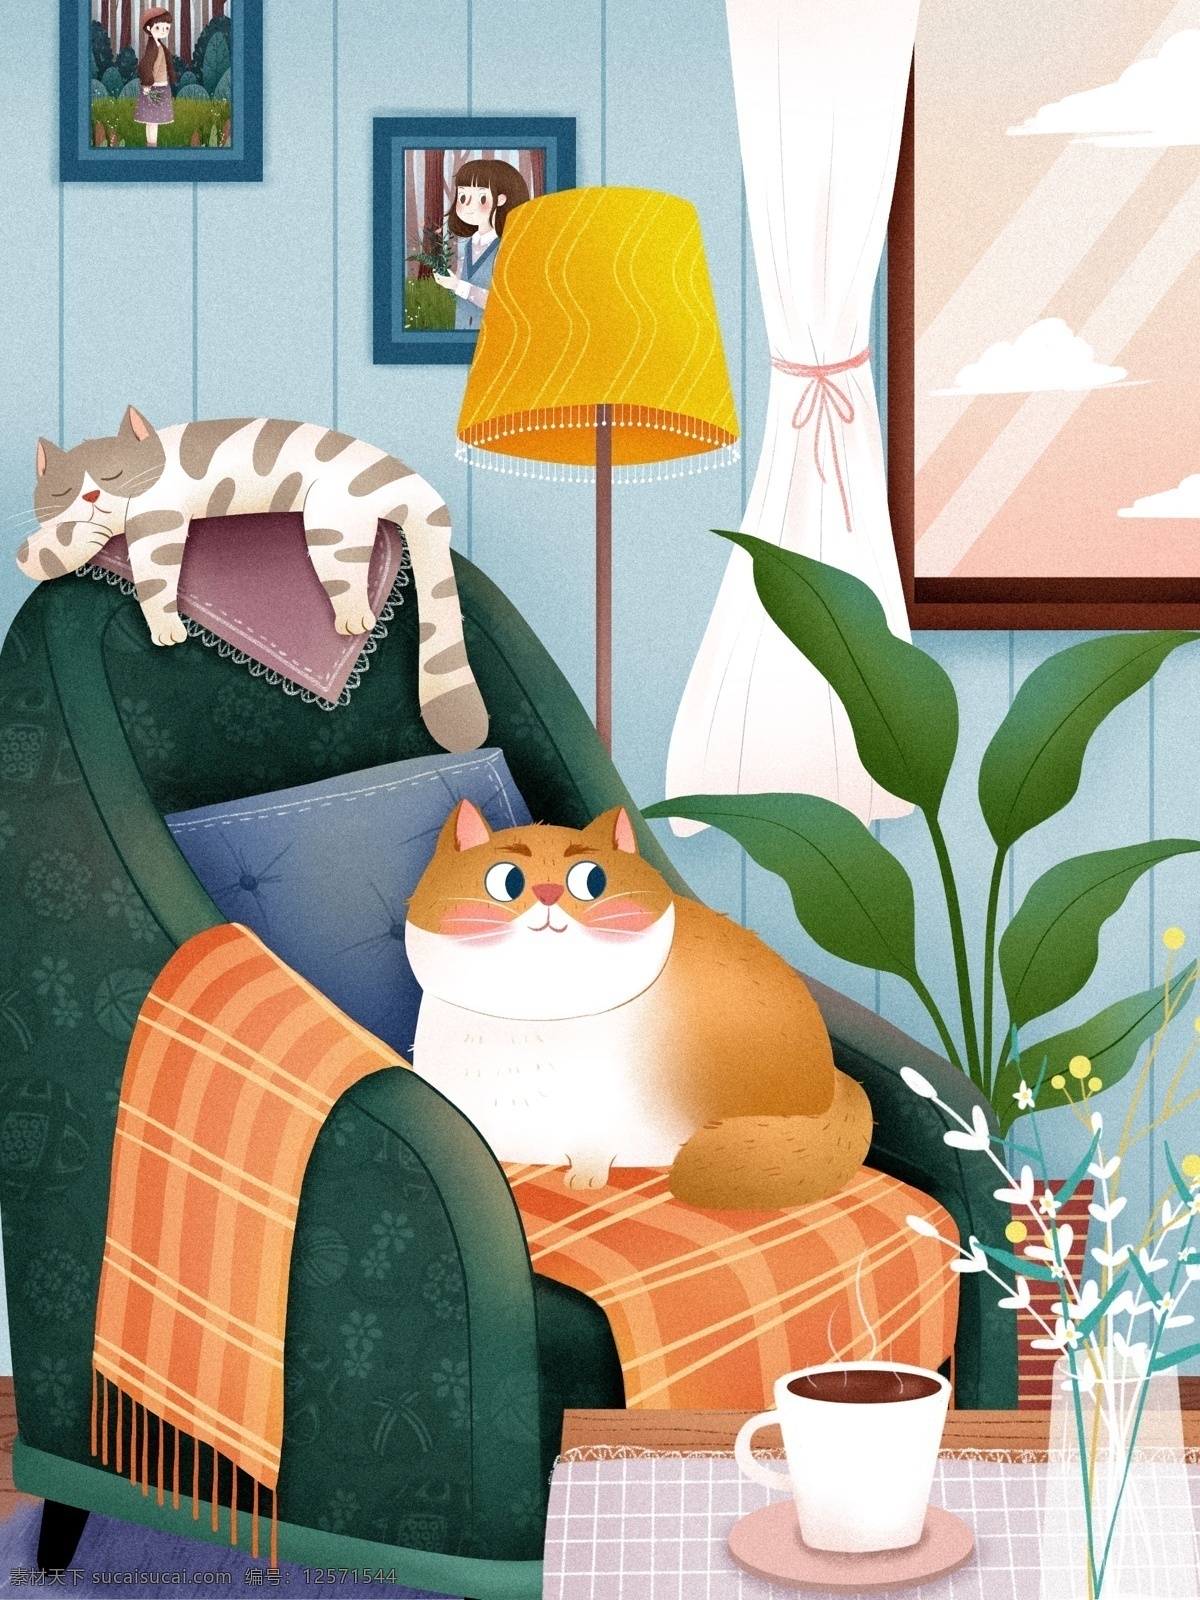 猫 日 治愈 系 插画 室内 沙发 植物 猫之日 黄猫 褐色 茶几 台灯 花 抱枕 手绘 生活 温柔 小猫 治愈系